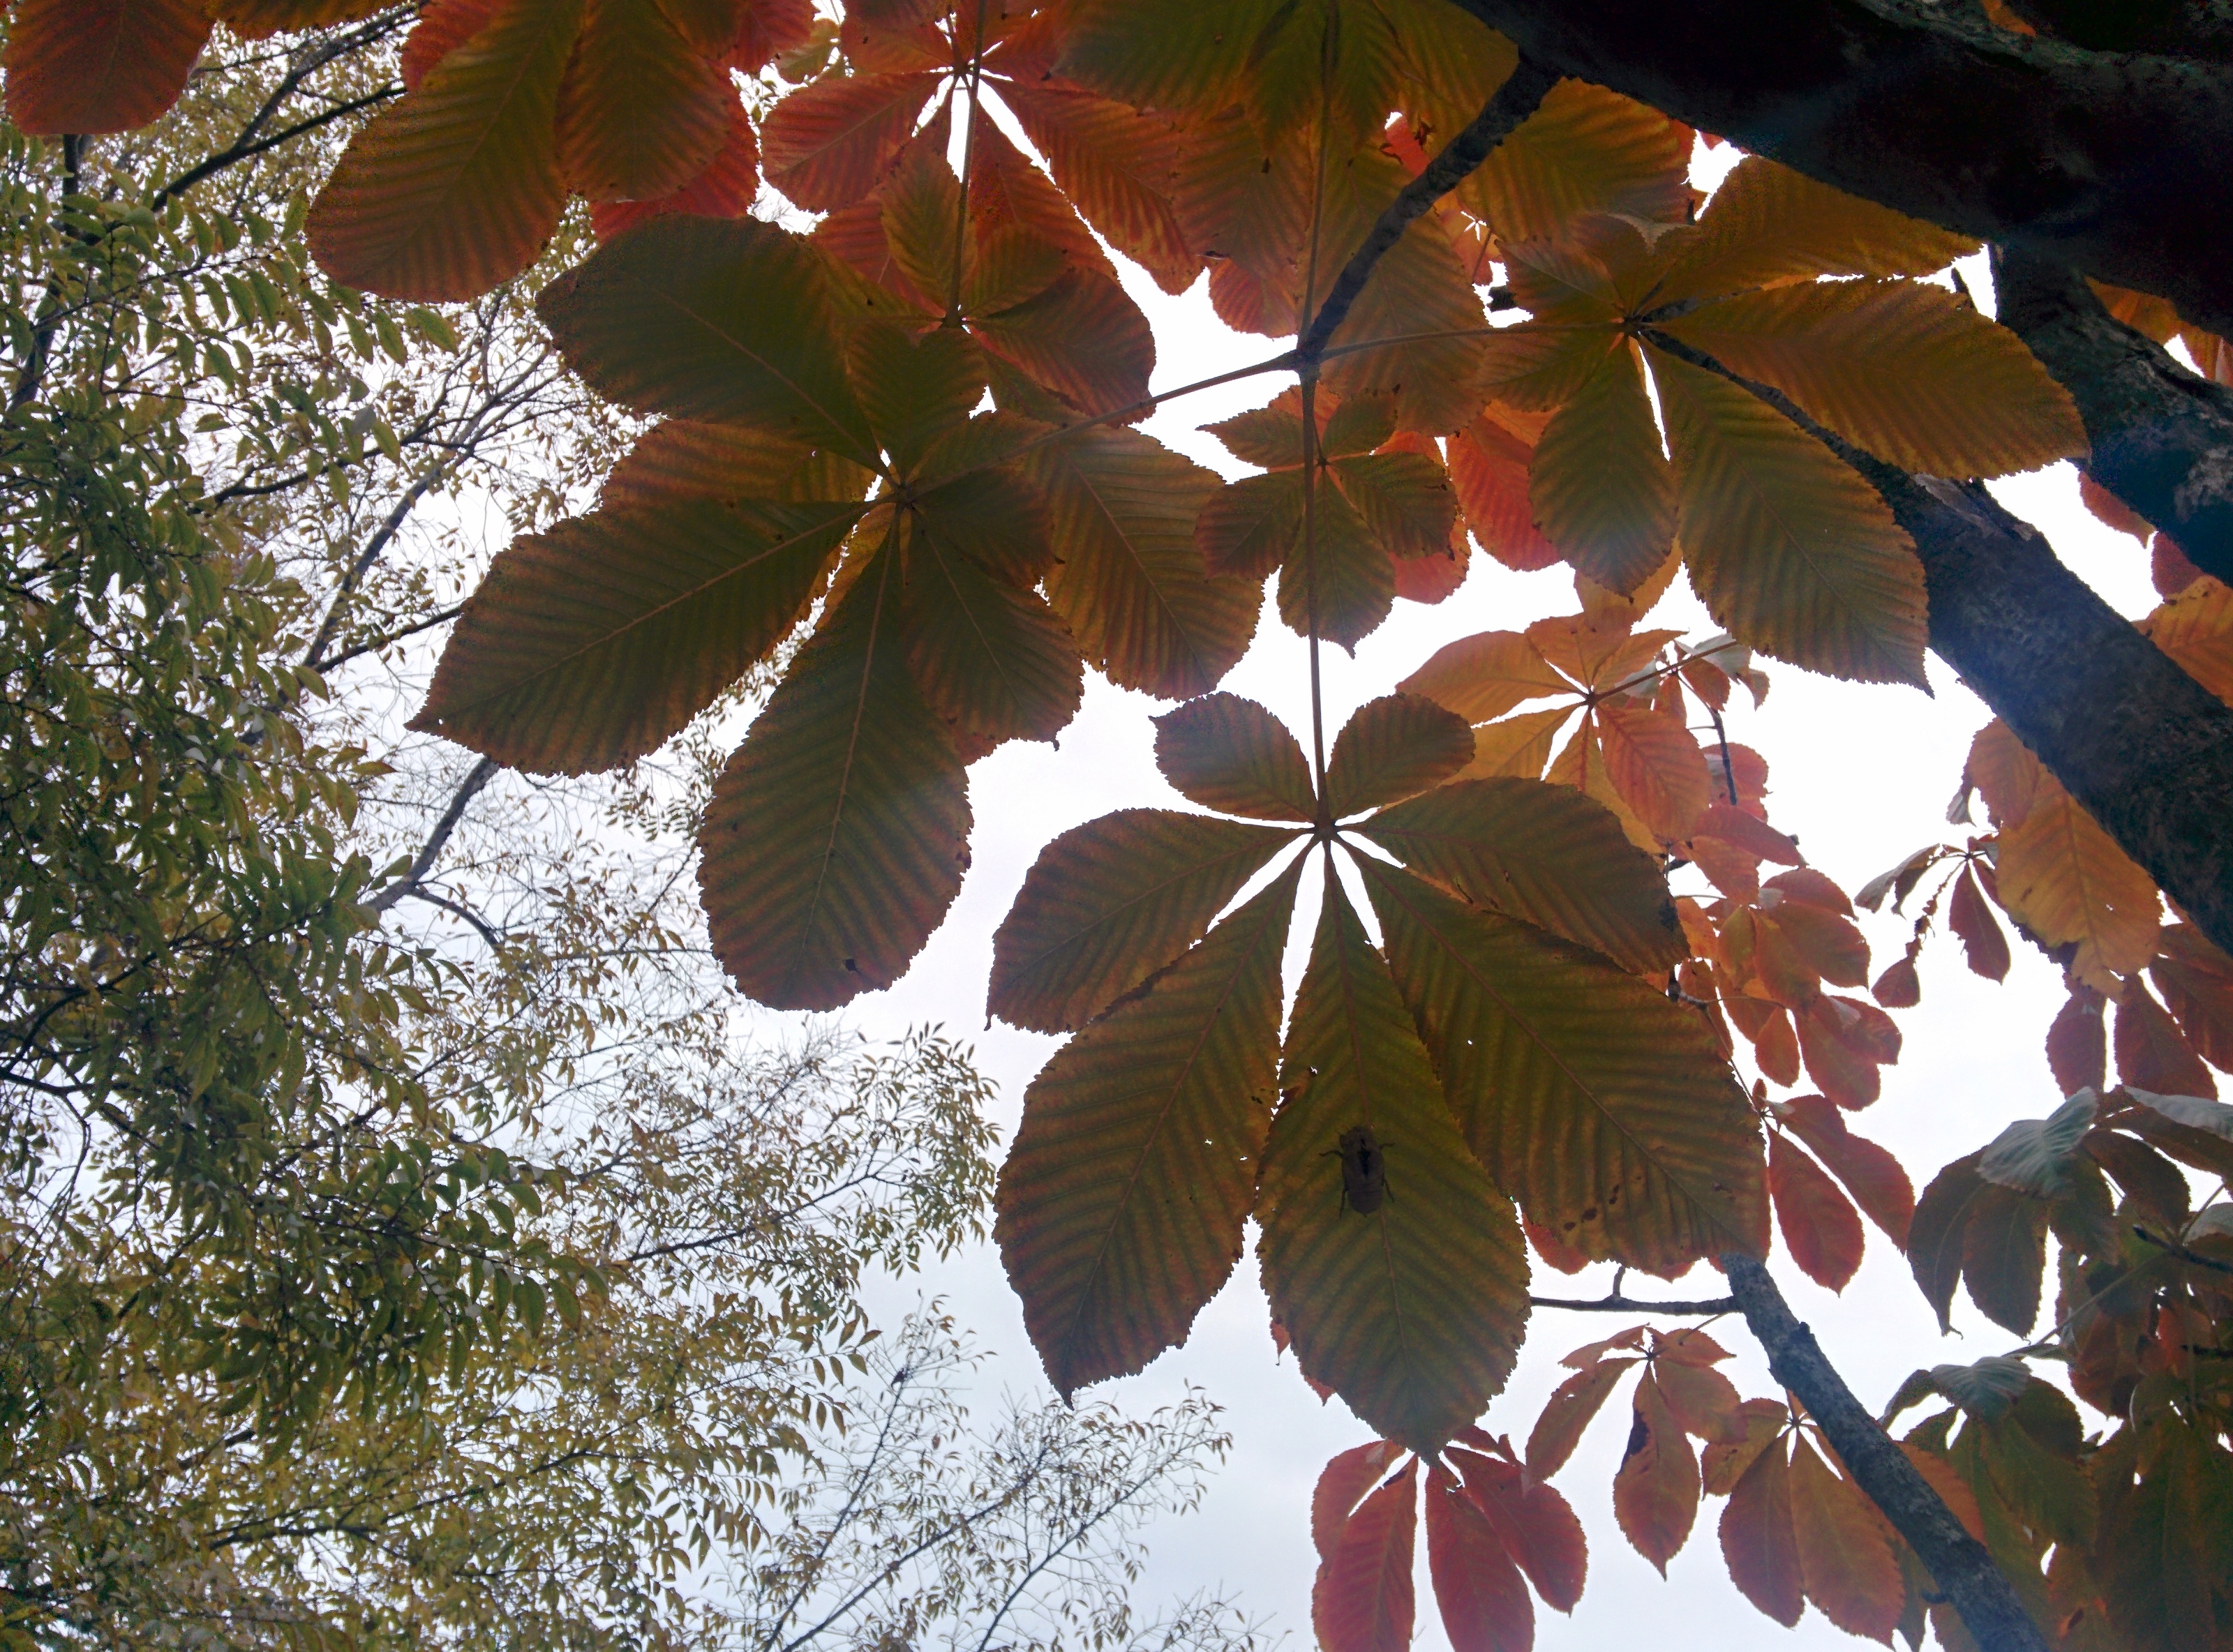 IMG_20151106_144159.jpg 일곱개 잎이 모여나는 칠엽수(七葉樹)